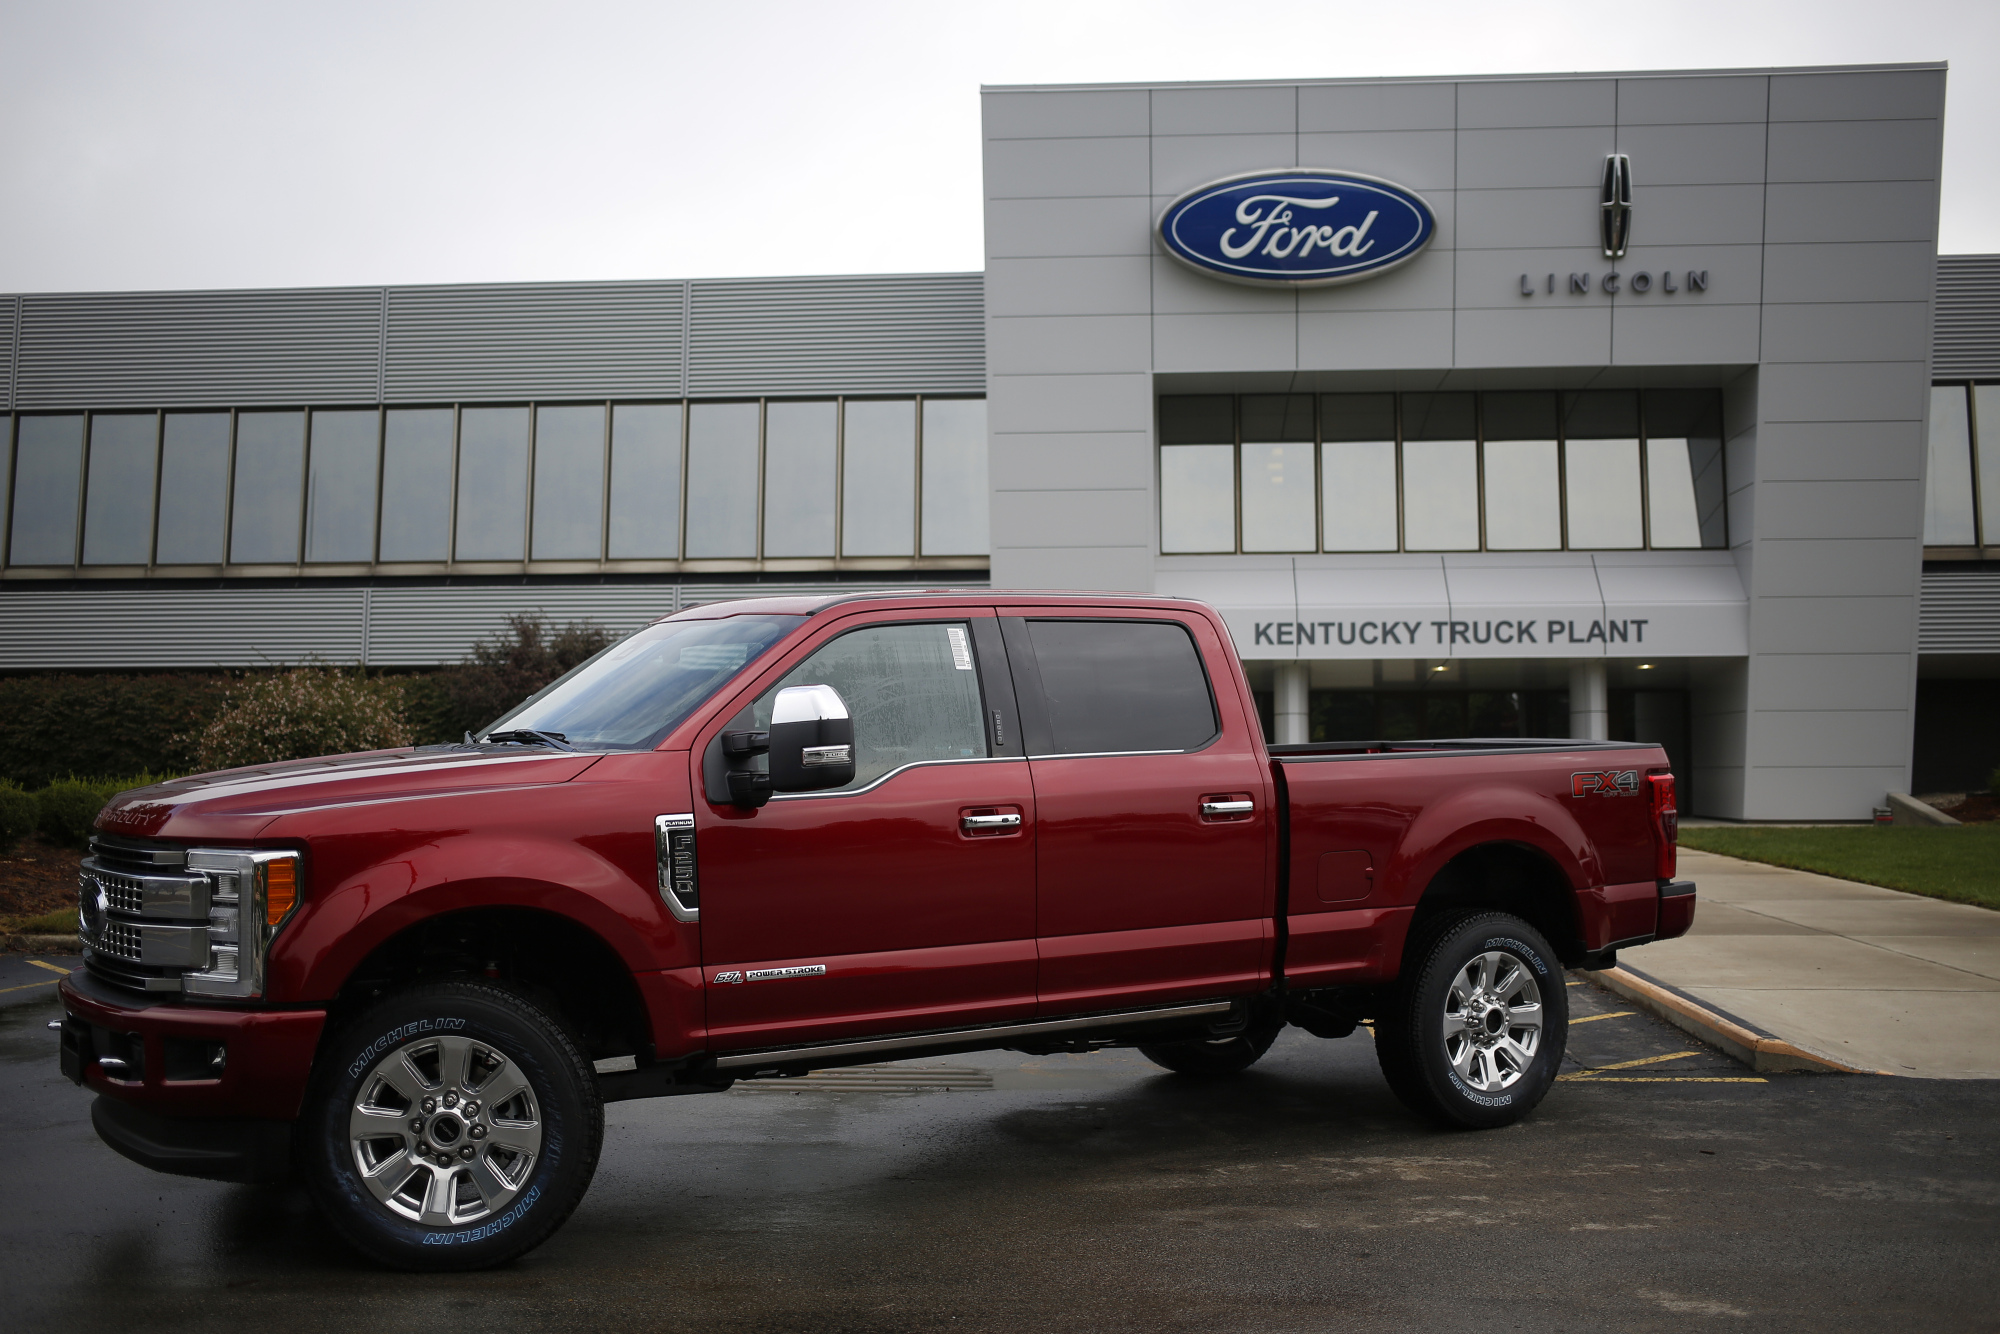 Ford bị cáo buộc “gian lận” khí thải trên 500 nghìn xe bán tải